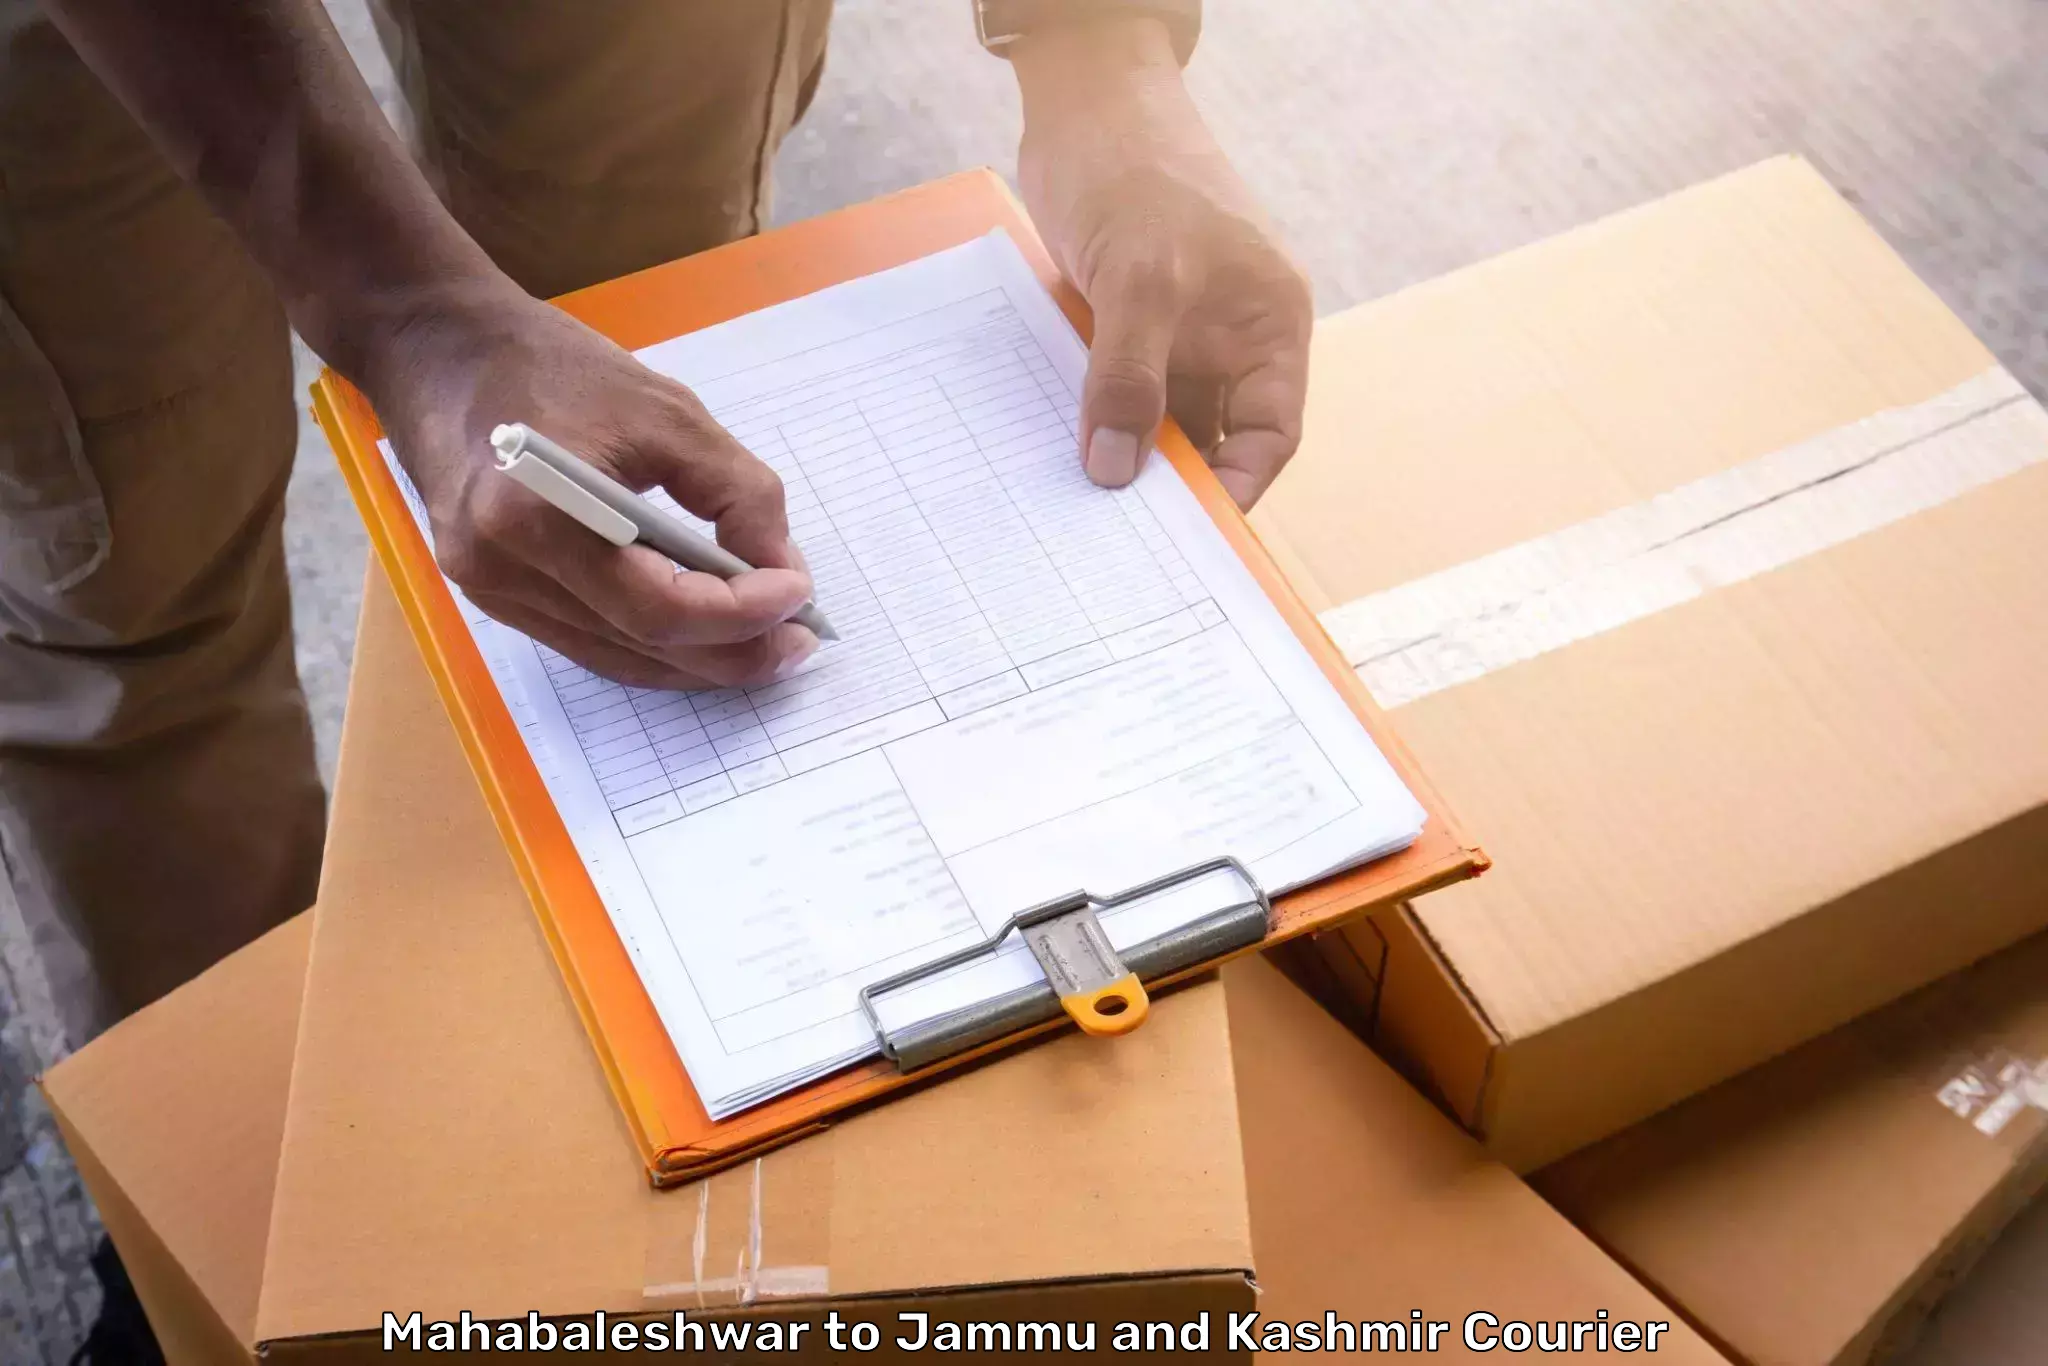 Luggage shipment specialists Mahabaleshwar to Rajouri